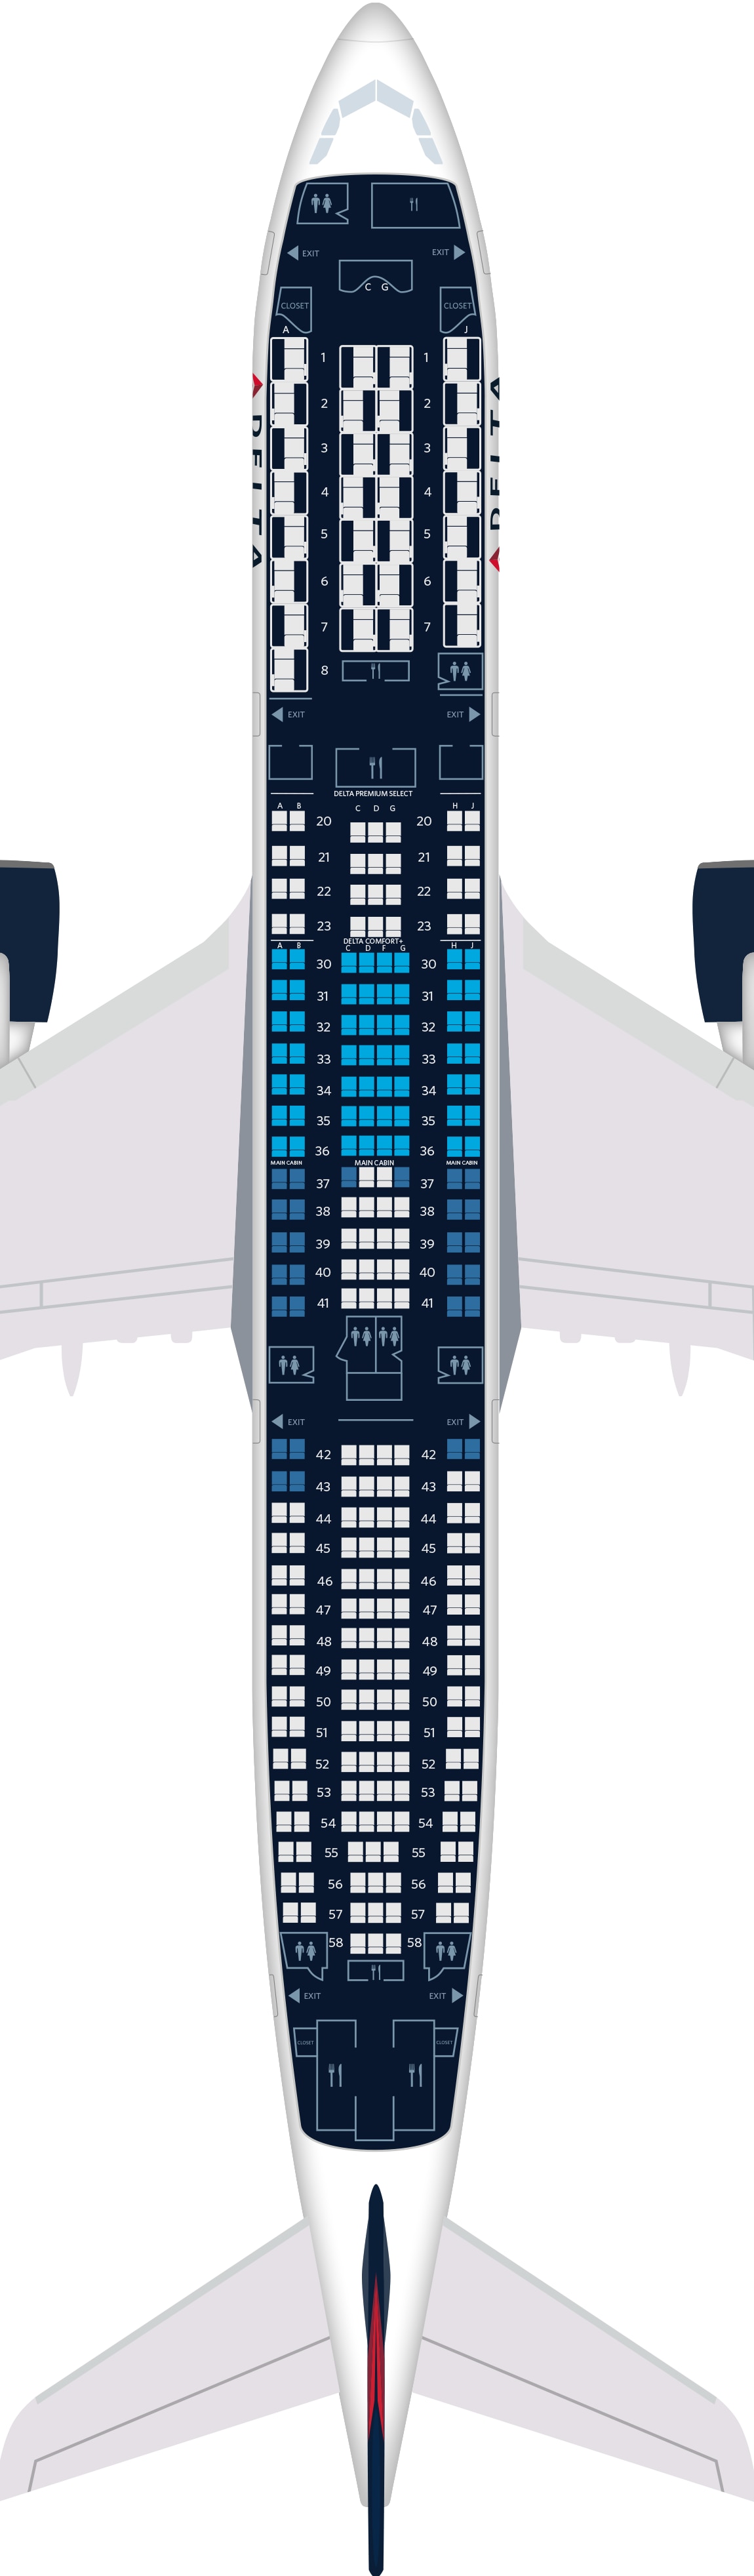 空客a330-900飞机座位图,规格和服务设施:达美航空公司